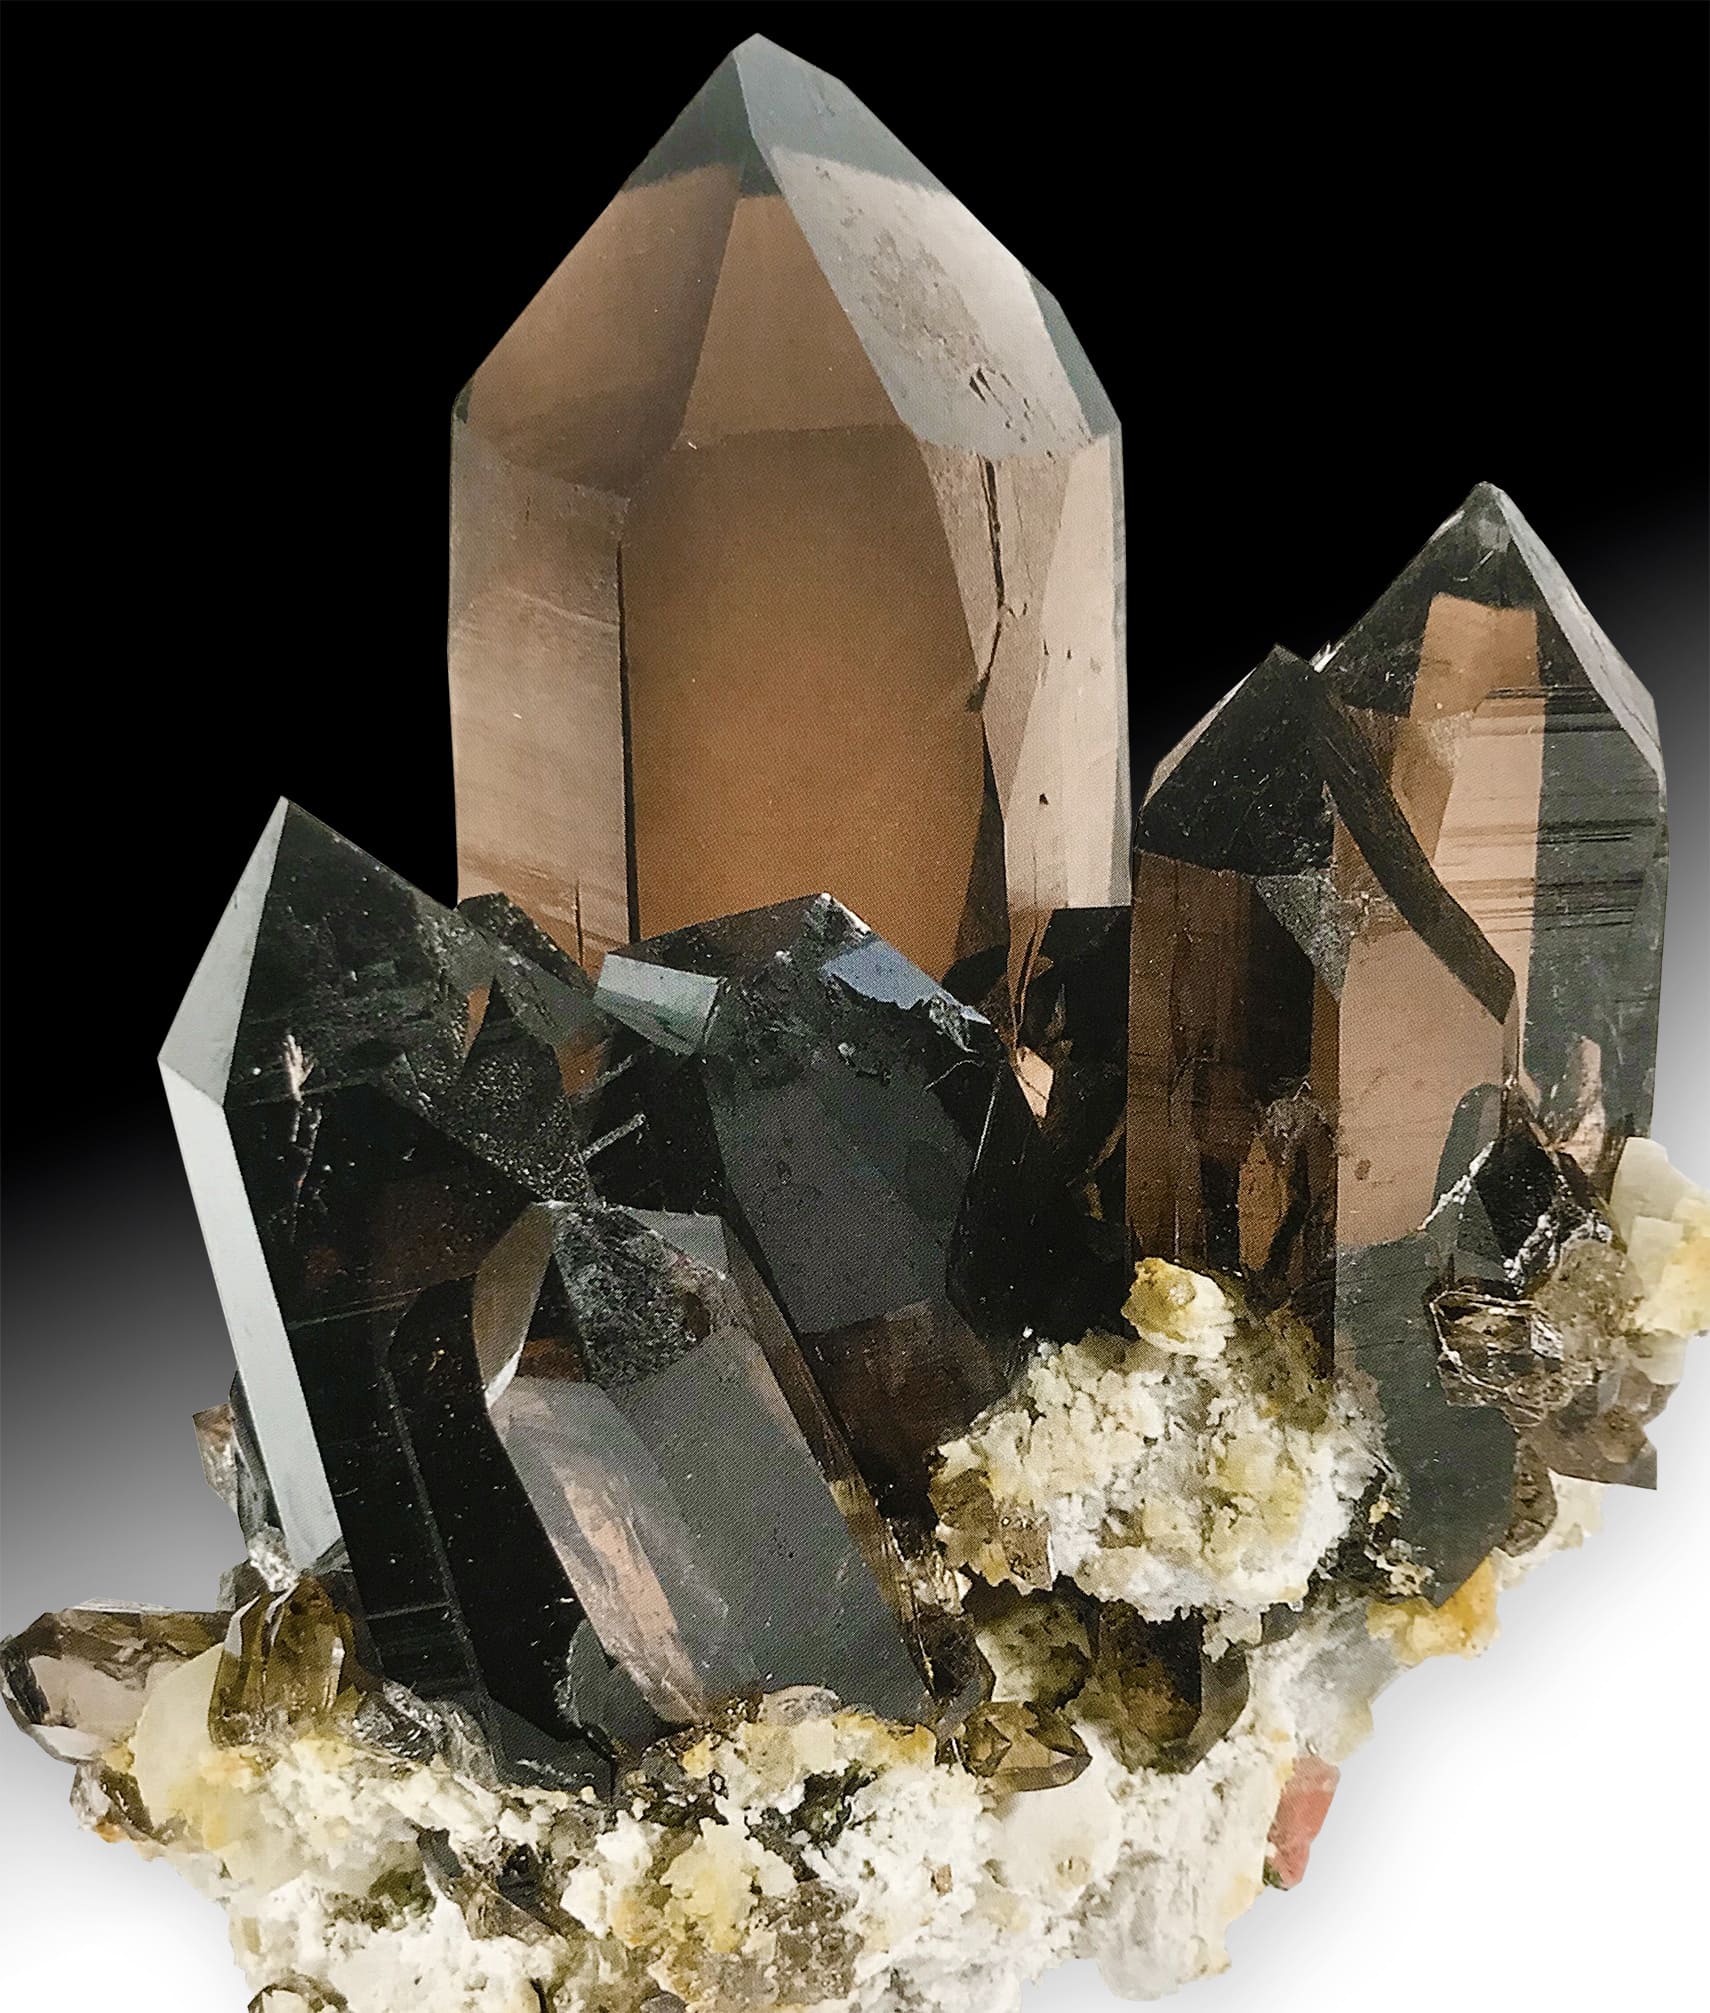 Cristal de Chamonix, chez Luciolle-avec deux ailes